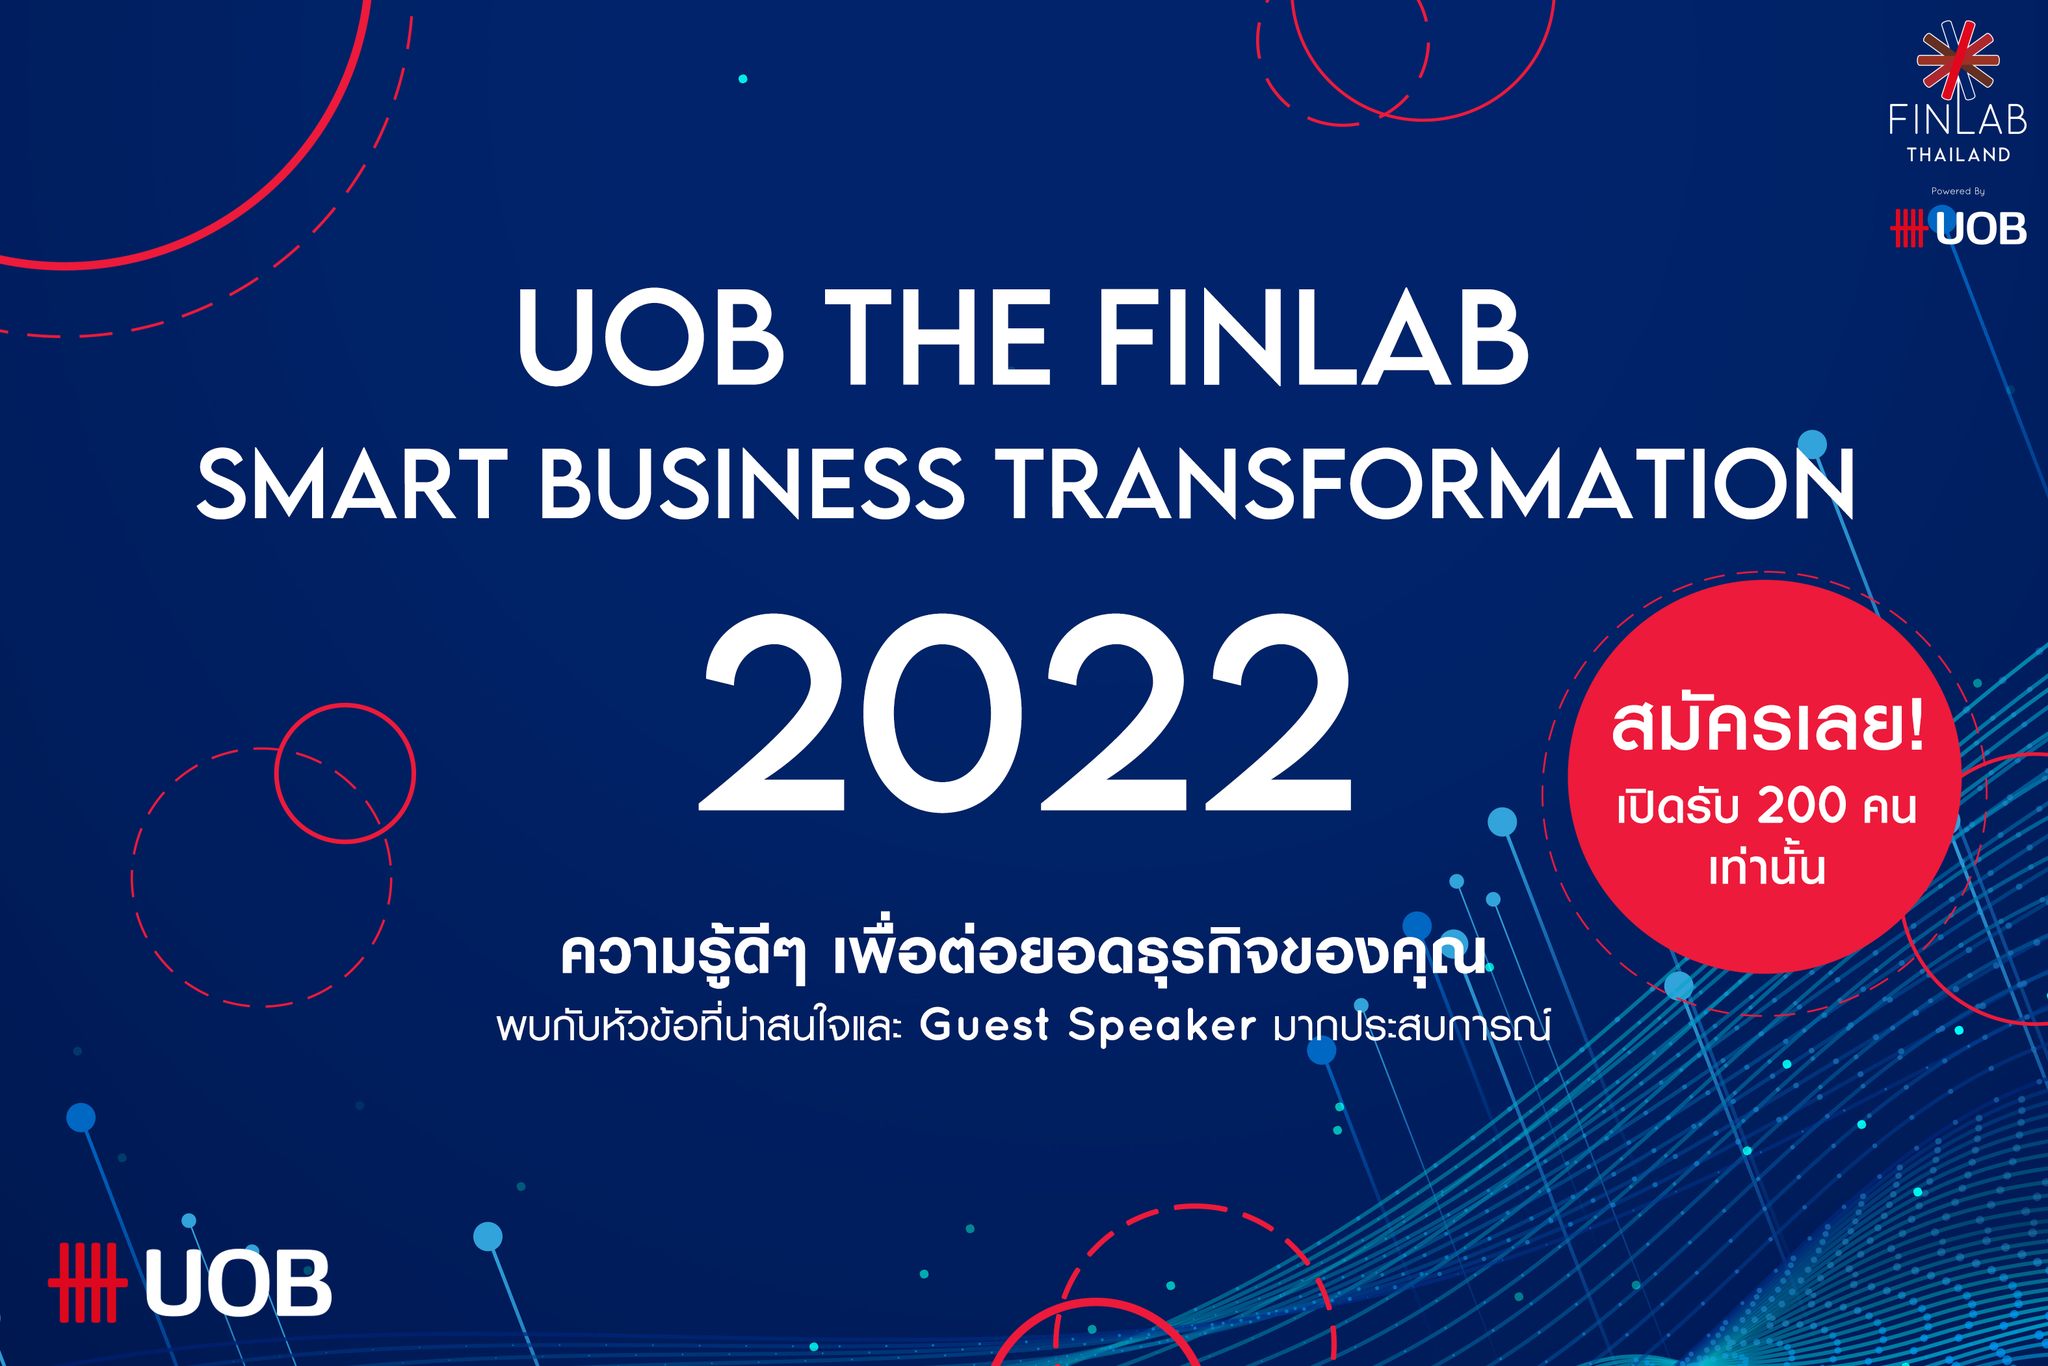 ธนาคารยูโอบี ประเทศไทย ดึงพันธมิตรรายใหม่ HUBBA เสริมแกร่ง โครงการ Smart Business Transformation ปี 2565 ติดอาวุธ SME มากกว่า 200 ราย ไร้ค่าใช้จ่าย สร้างความพร้อมเทคโนโลยีและการลงทุนด้านเครื่องมือดิจิทัล 